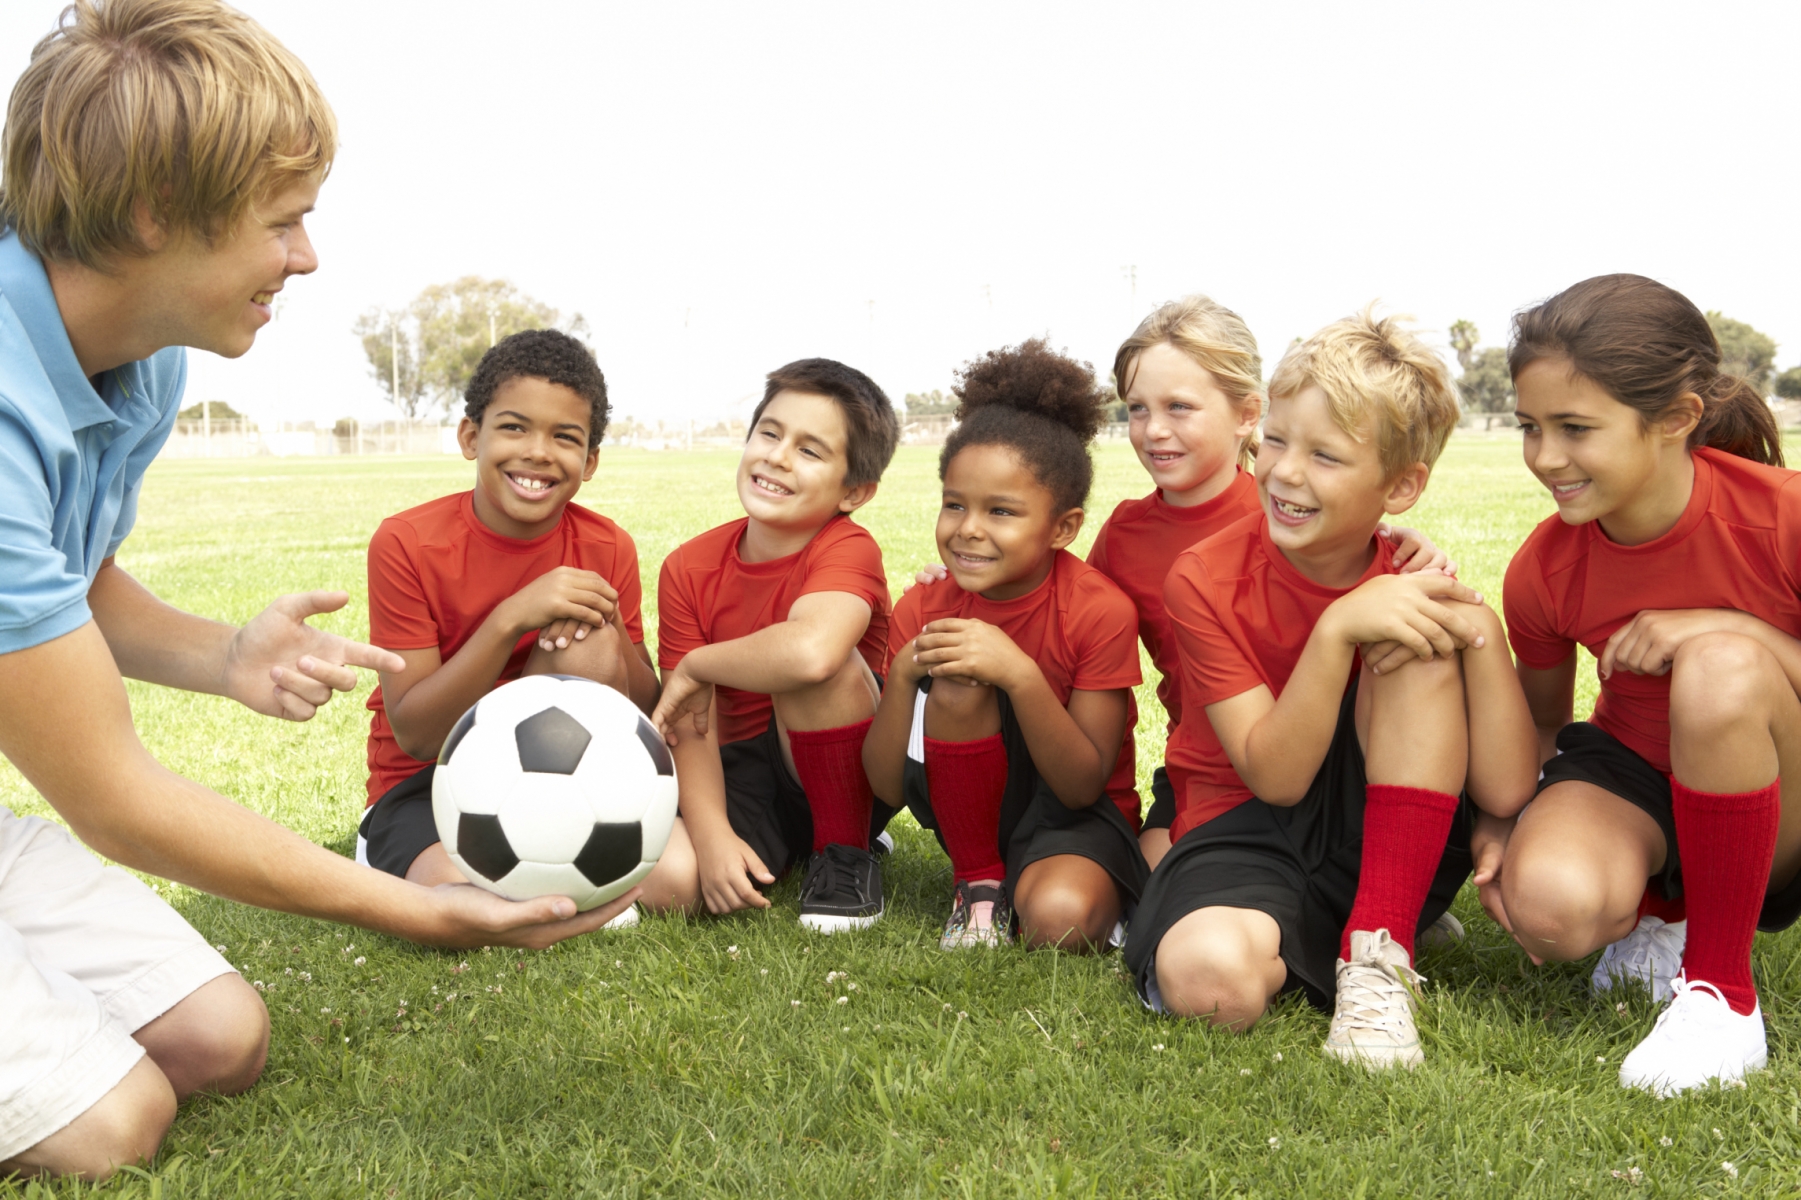 Deportes recomendados en niños y adolescentes – Los Que No